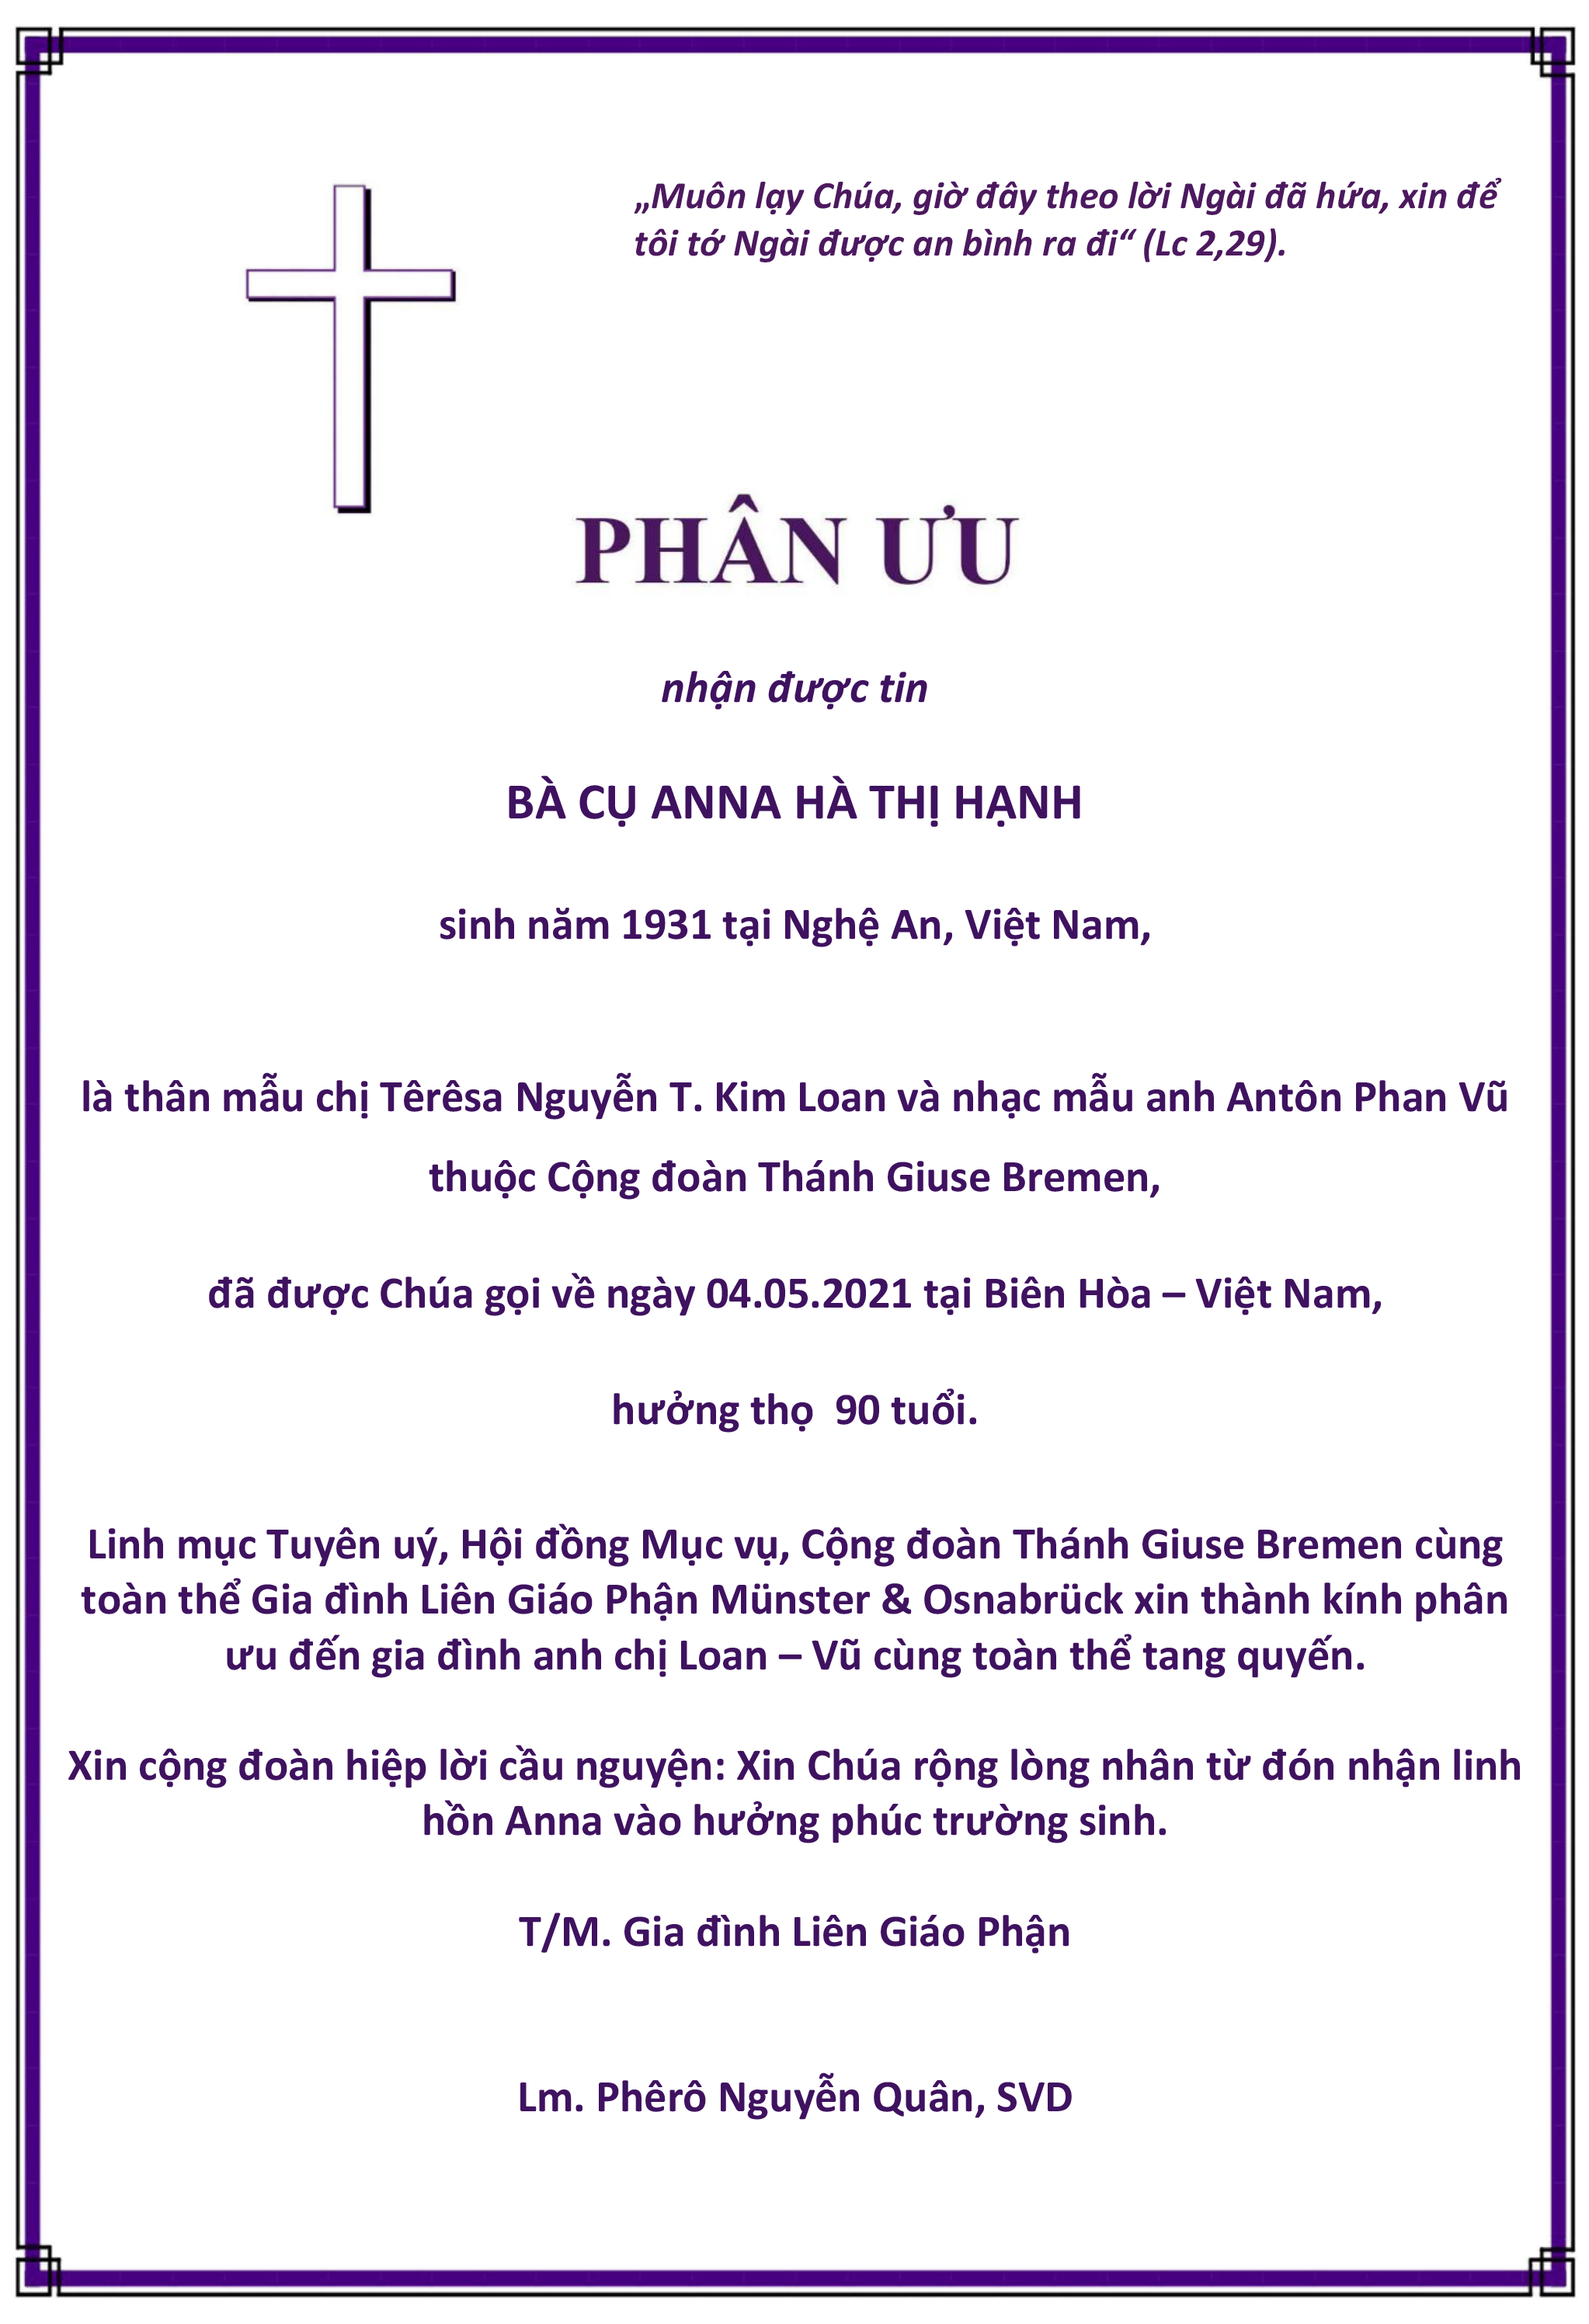 Anna Hà Thị Hạnh, 04.05.2021